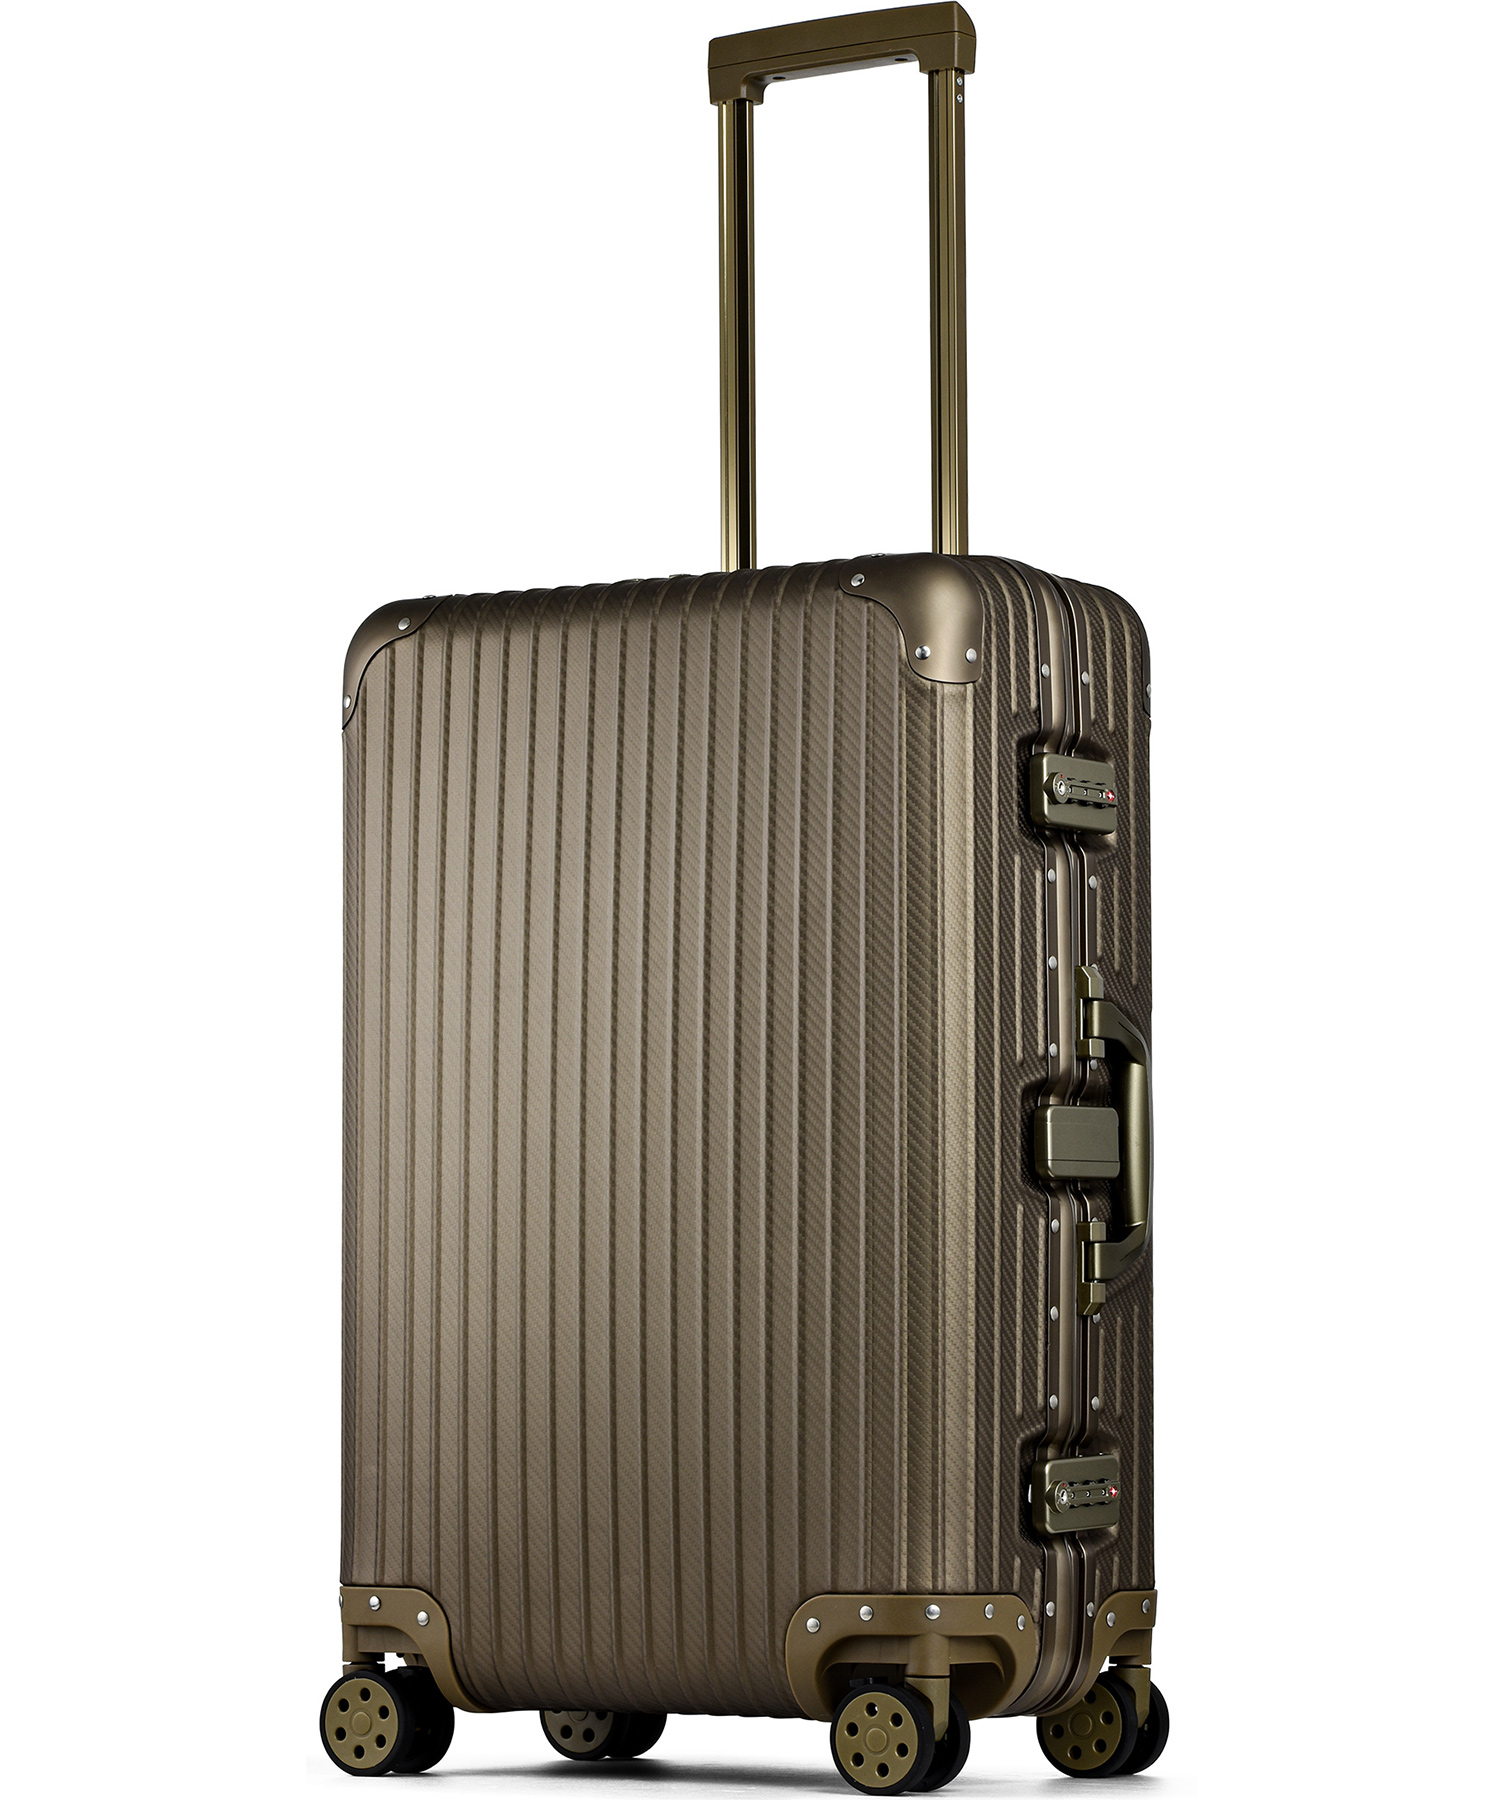 PROEVO】 スーツケース アルミマグネシウム合金 M 中型 アルミニウム 